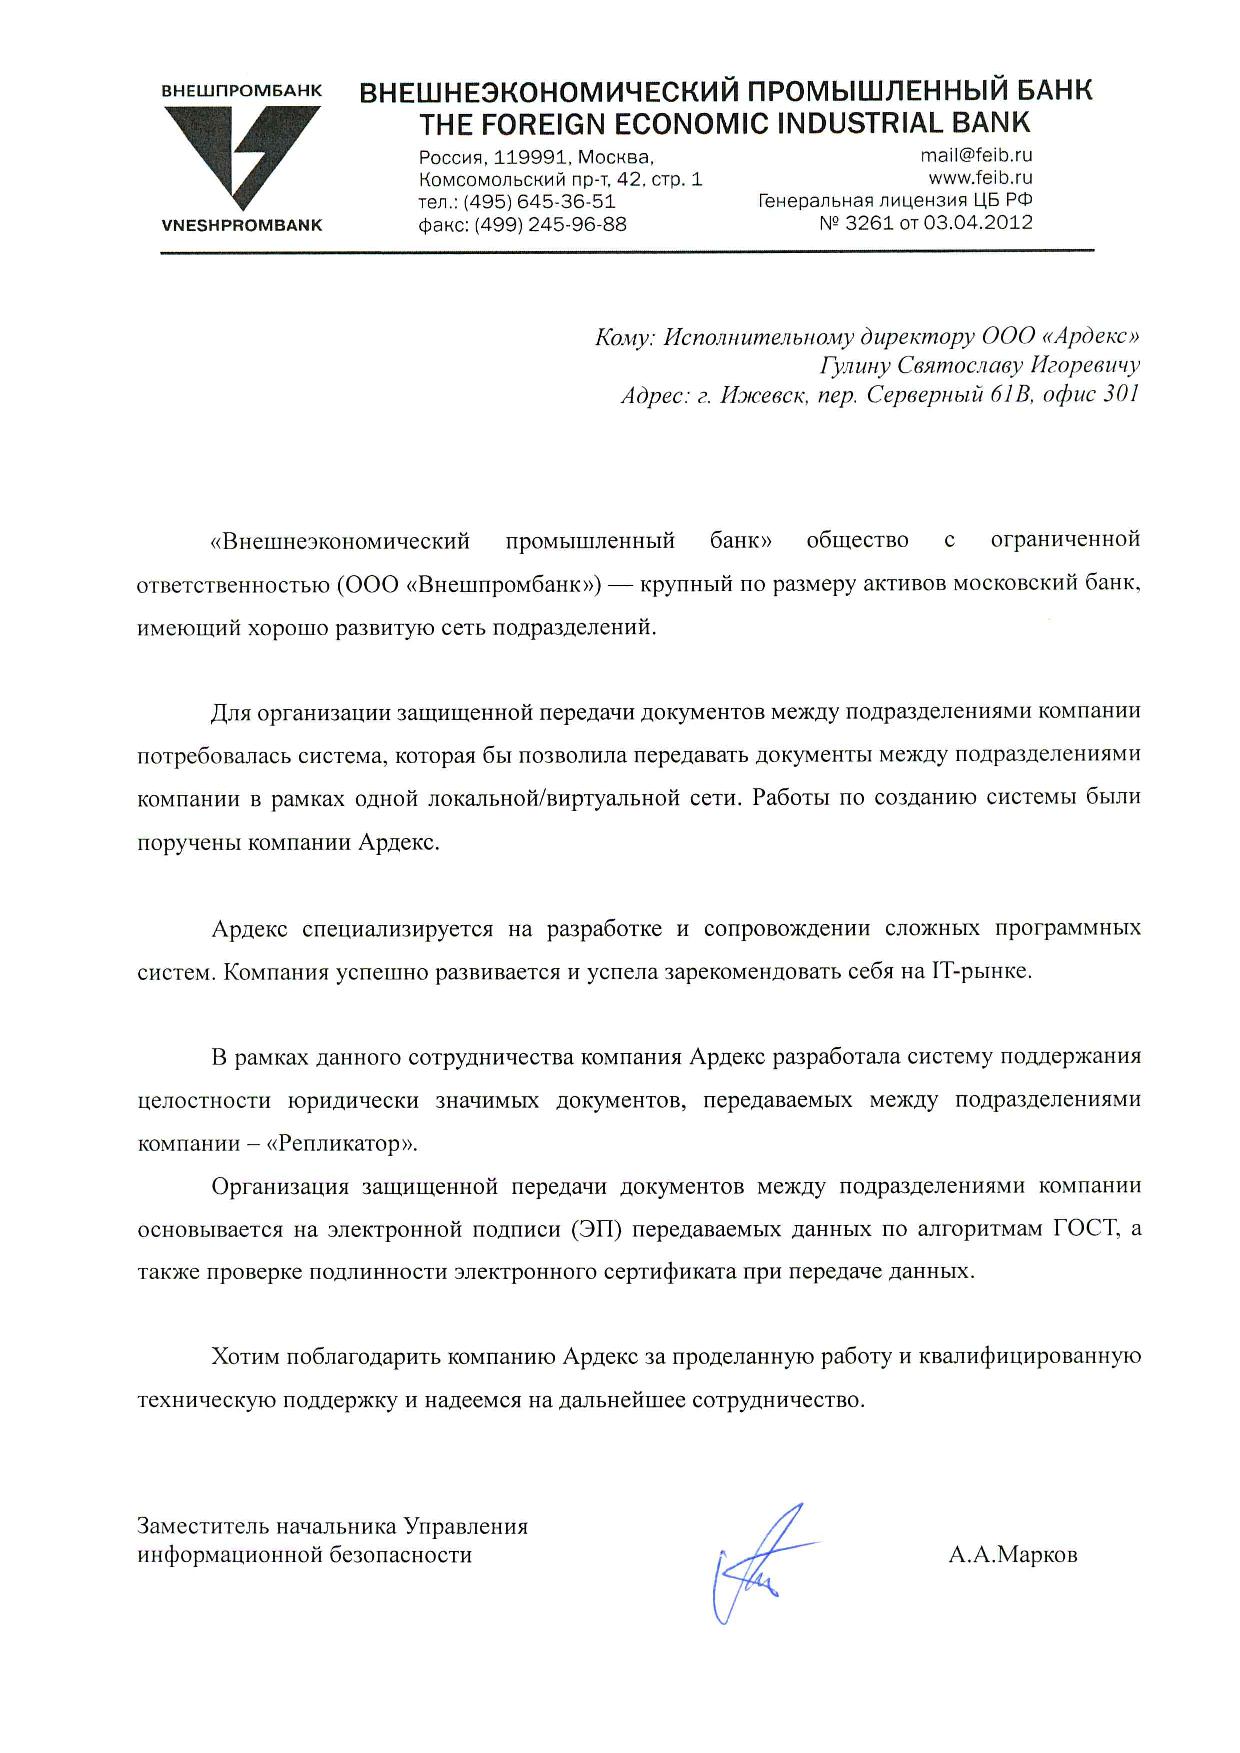 Организация защищенной передачи документов между подразделениями ООО «Внешпромбанк»